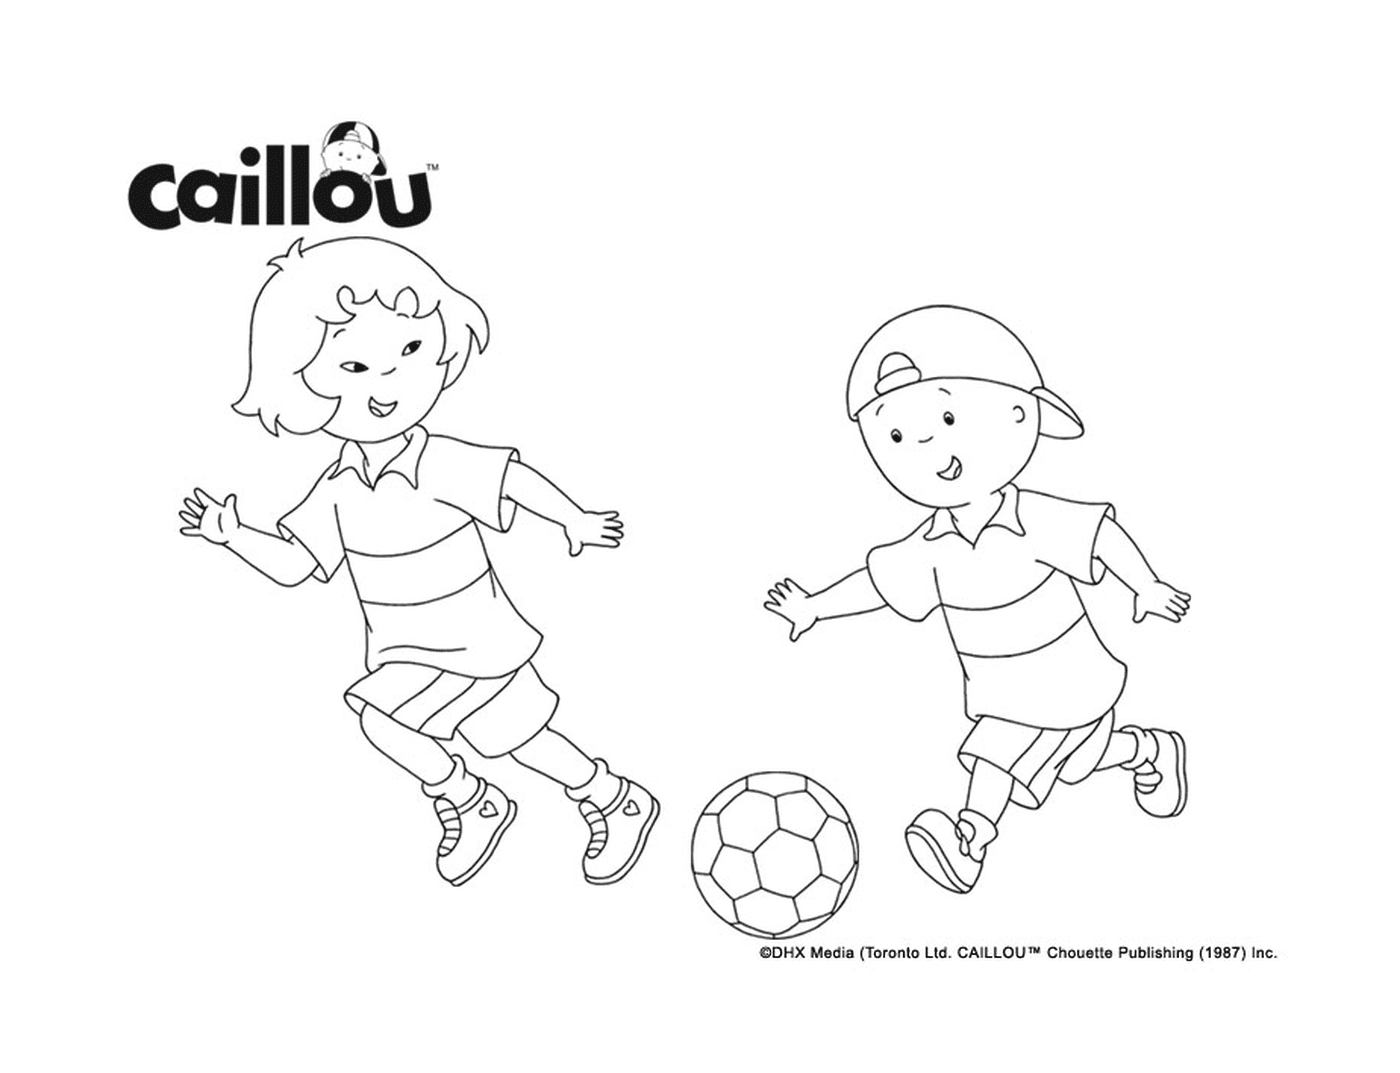  Caillou und Sarah spielen Fußball, um sich auf die FIFA-Weltmeisterschaft vorzubereiten 